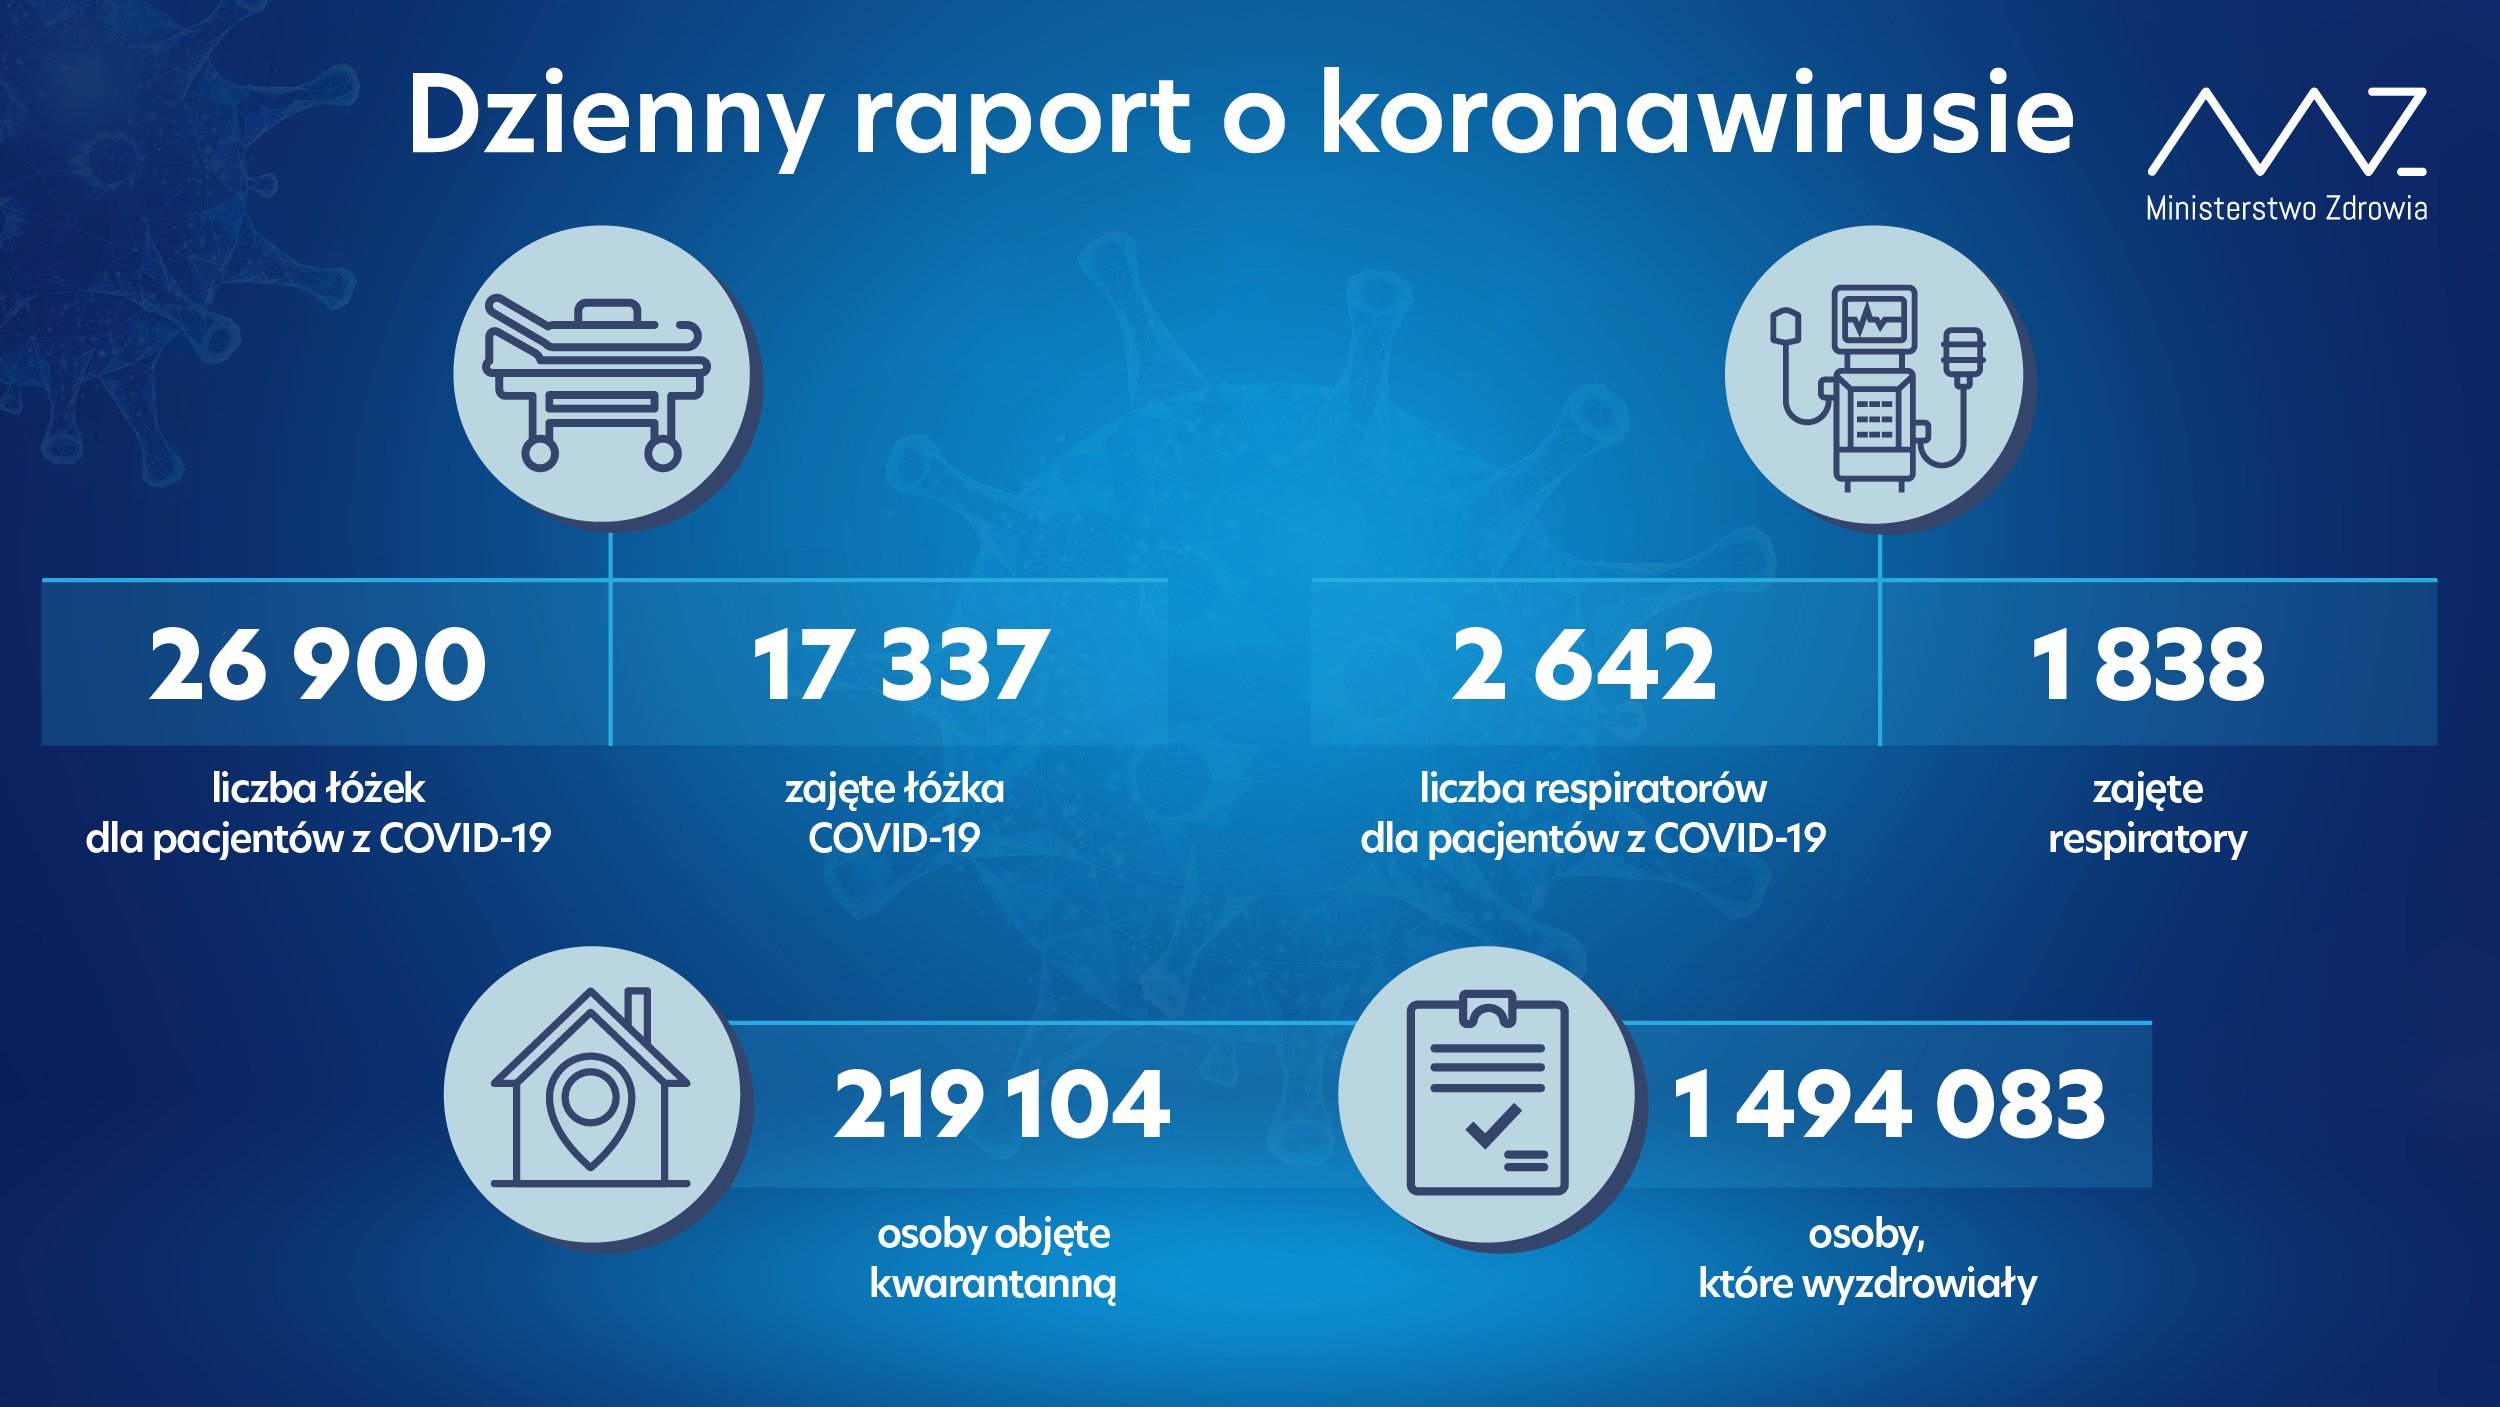 Mniej zakażeń niż ostatnio, ale lawinowo rośnie liczba chorych na COVID-19 w szpitalach